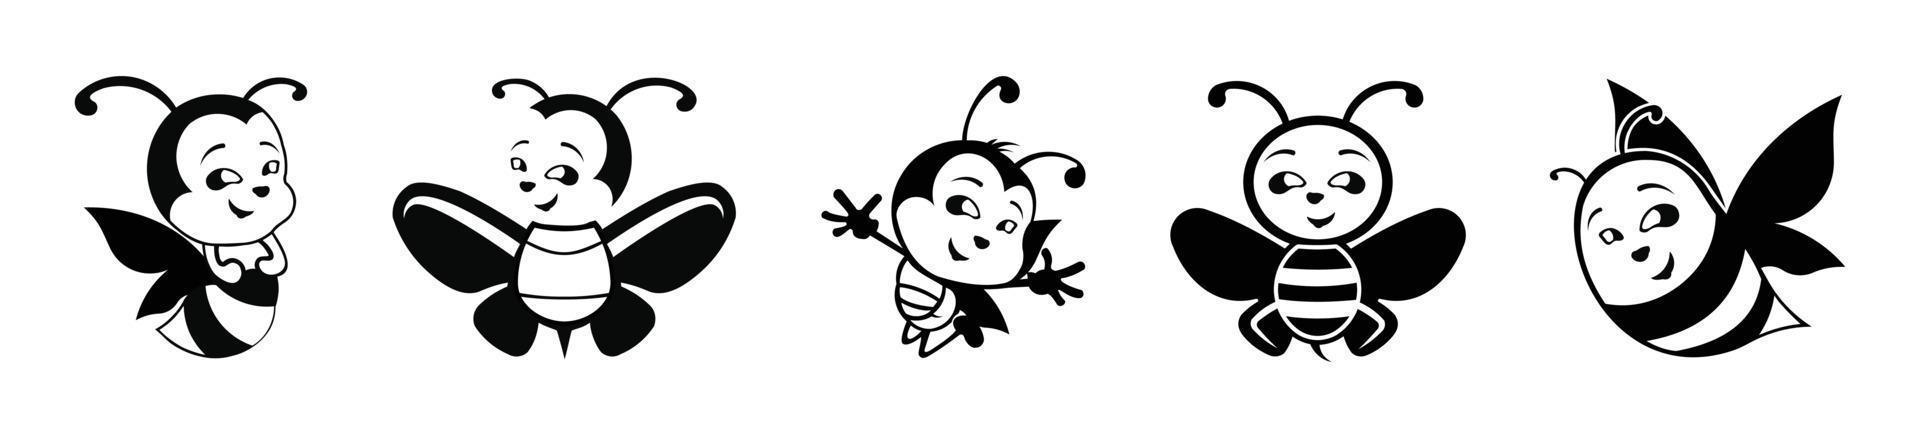 conjunto de dibujos animados de abeja de miel ilustración vectorial de estilo plano. conjunto de etiquetas de miel y abeja para productos con el logotipo de miel. vector